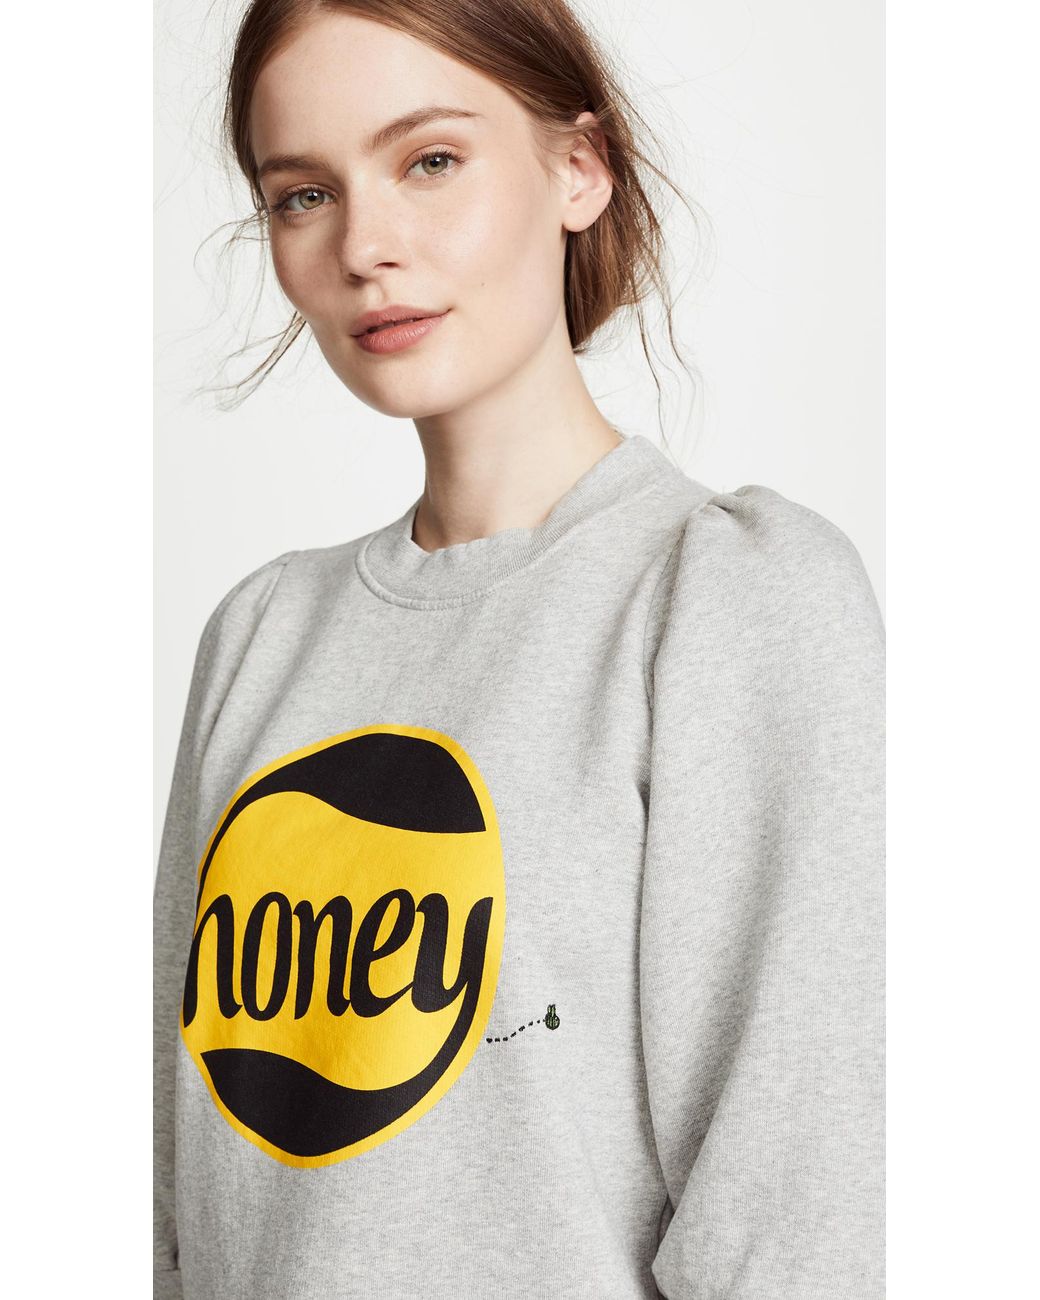 Ganni Fleece Honey Sweatshirt in Gray | Lyst